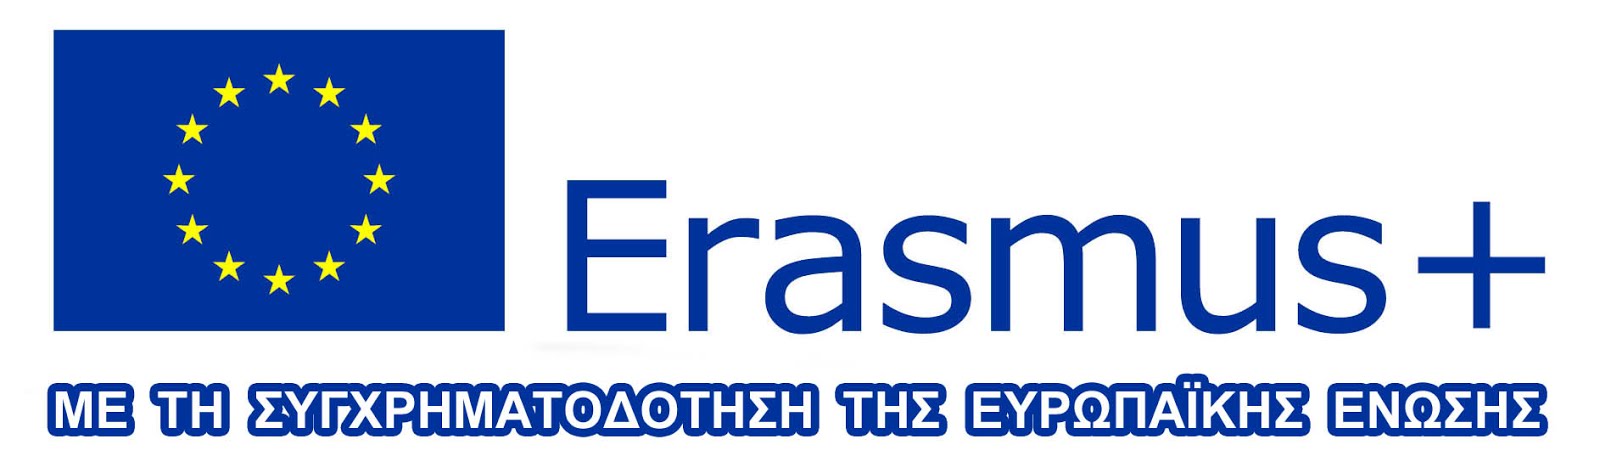 ΕΥΡΩΠΑΙΚΗ ΕΠΙΤΡΟΠΗ : Πρόγραμμα ERASMUS +